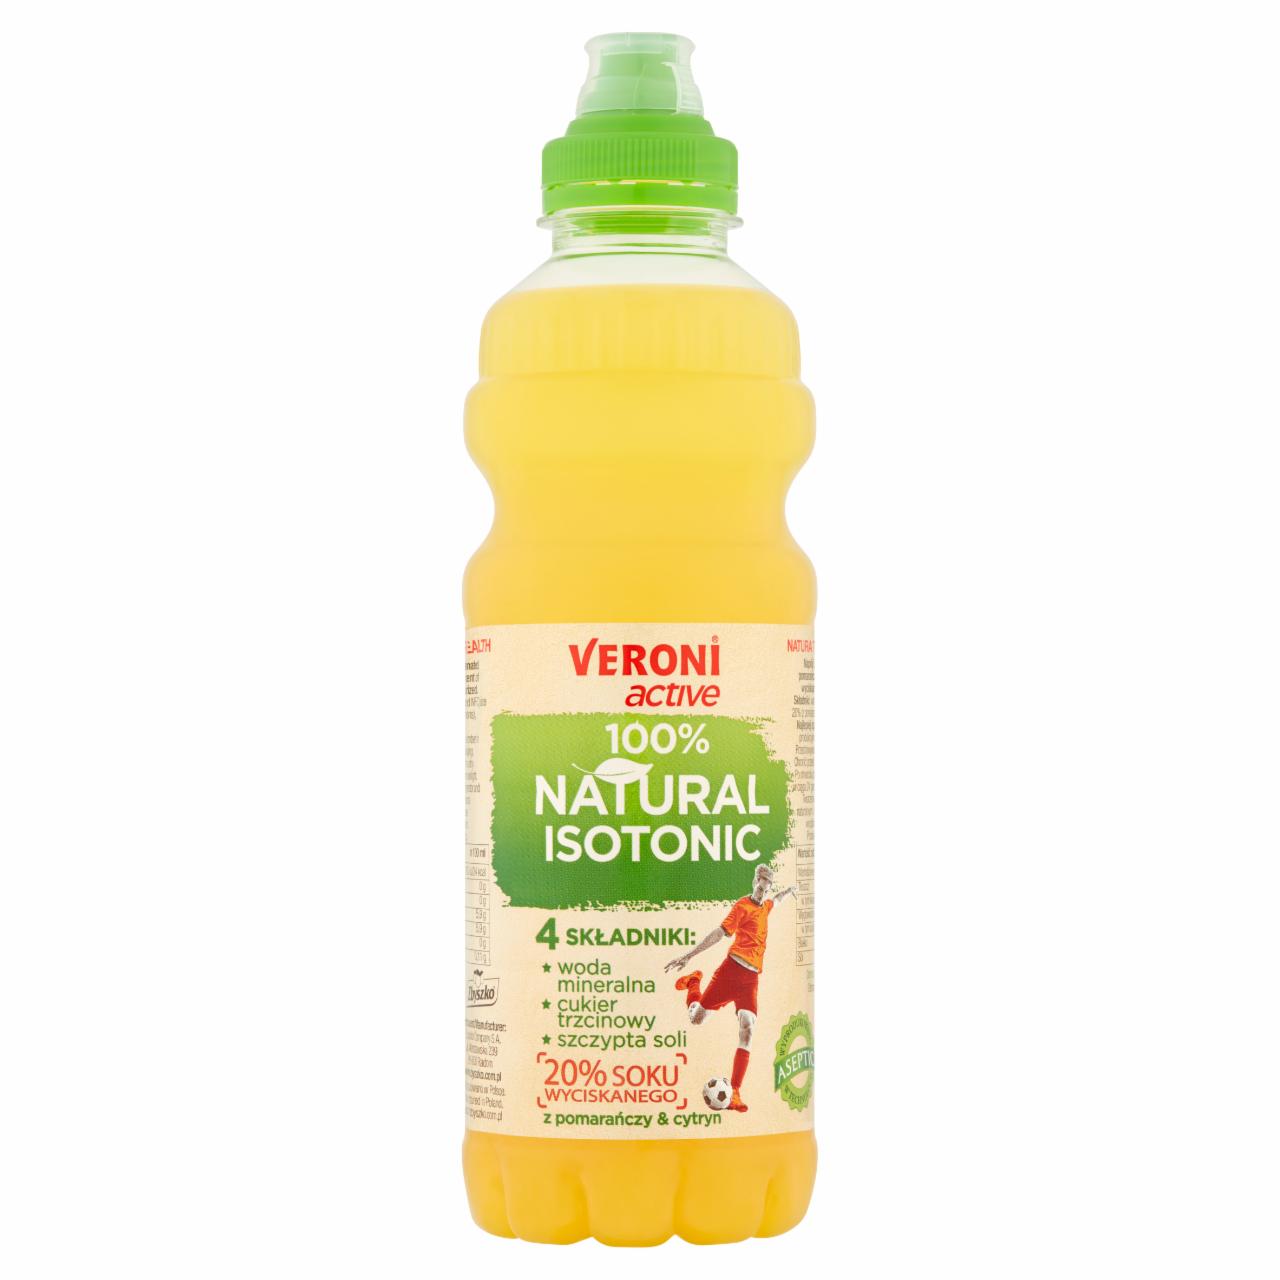 Zdjęcia - Veroni Active 100% Natural Isotonic Napój izotoniczny niegazowany pomarańczowo-cytrynowy 700 ml